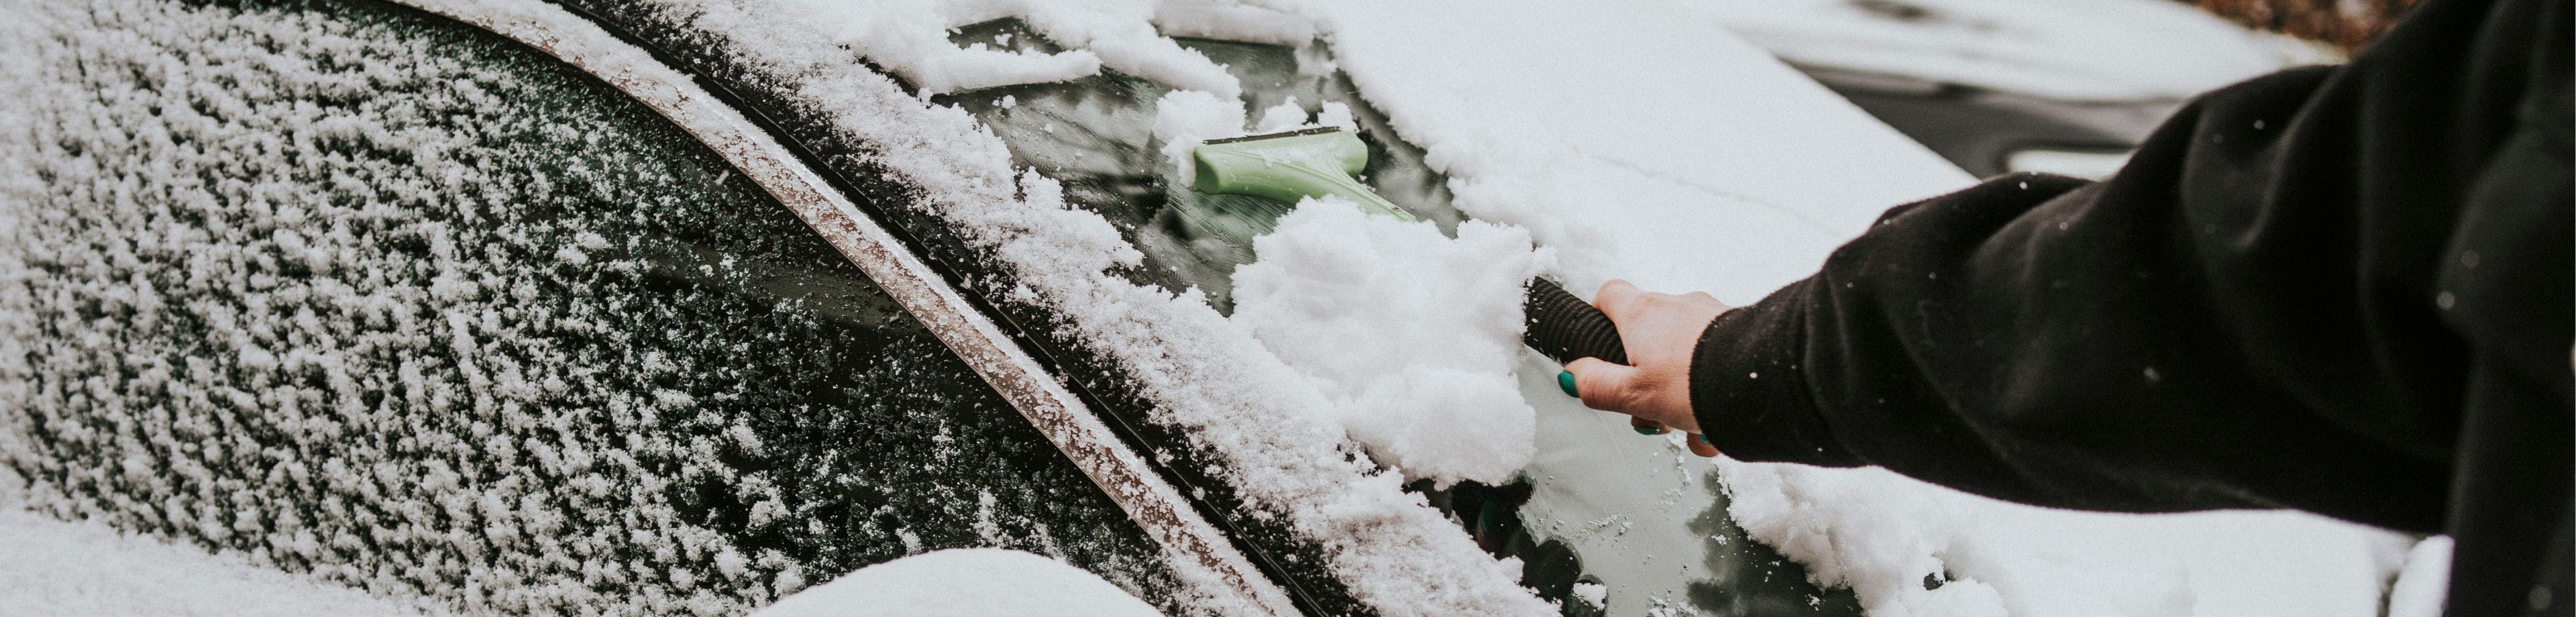 Iemand haalt met een ijskrabber sneeuw van de vooruit van een auto